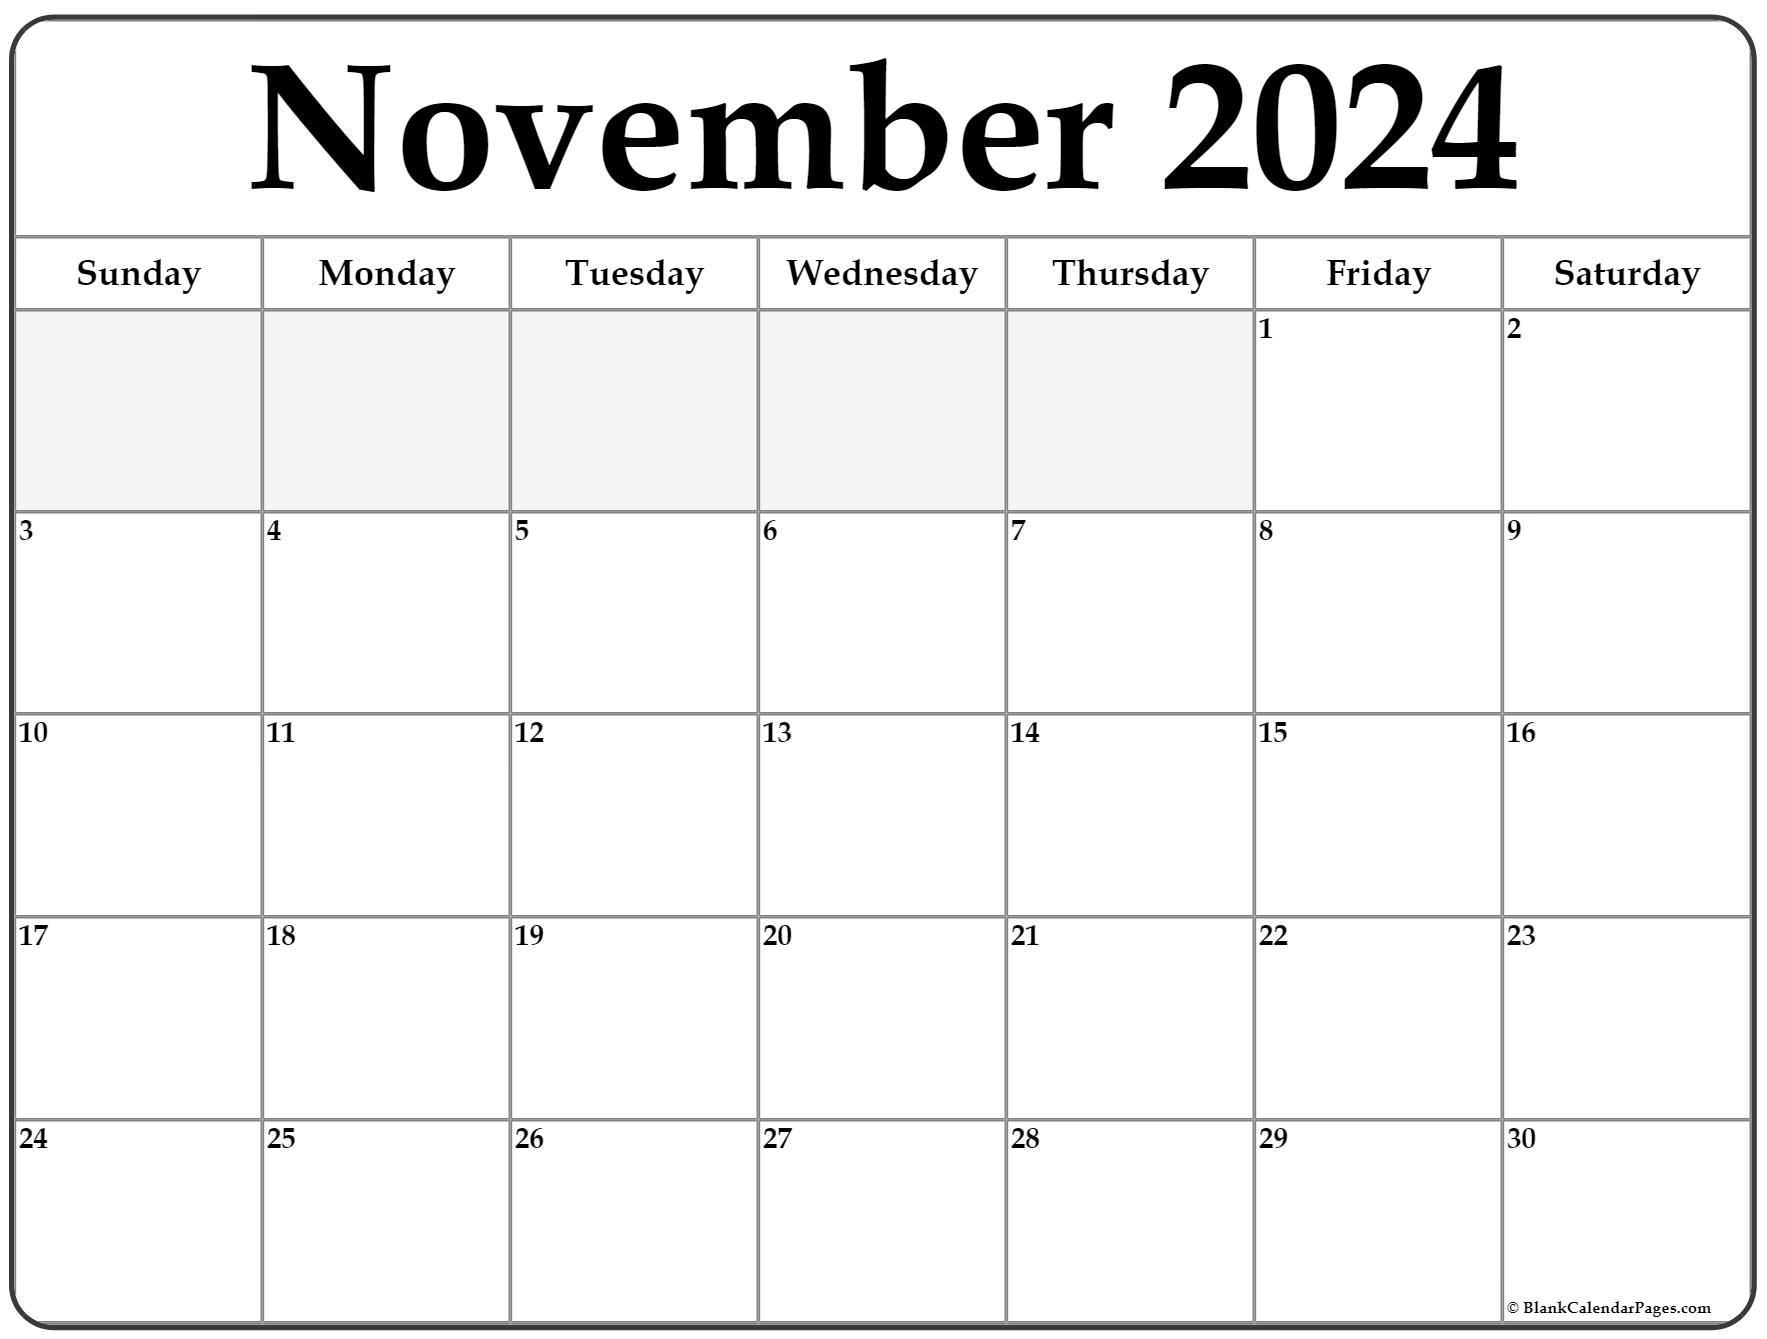 November Printable Calendar 2022 November 2022 Calendar | Free Printable Calendar Templates